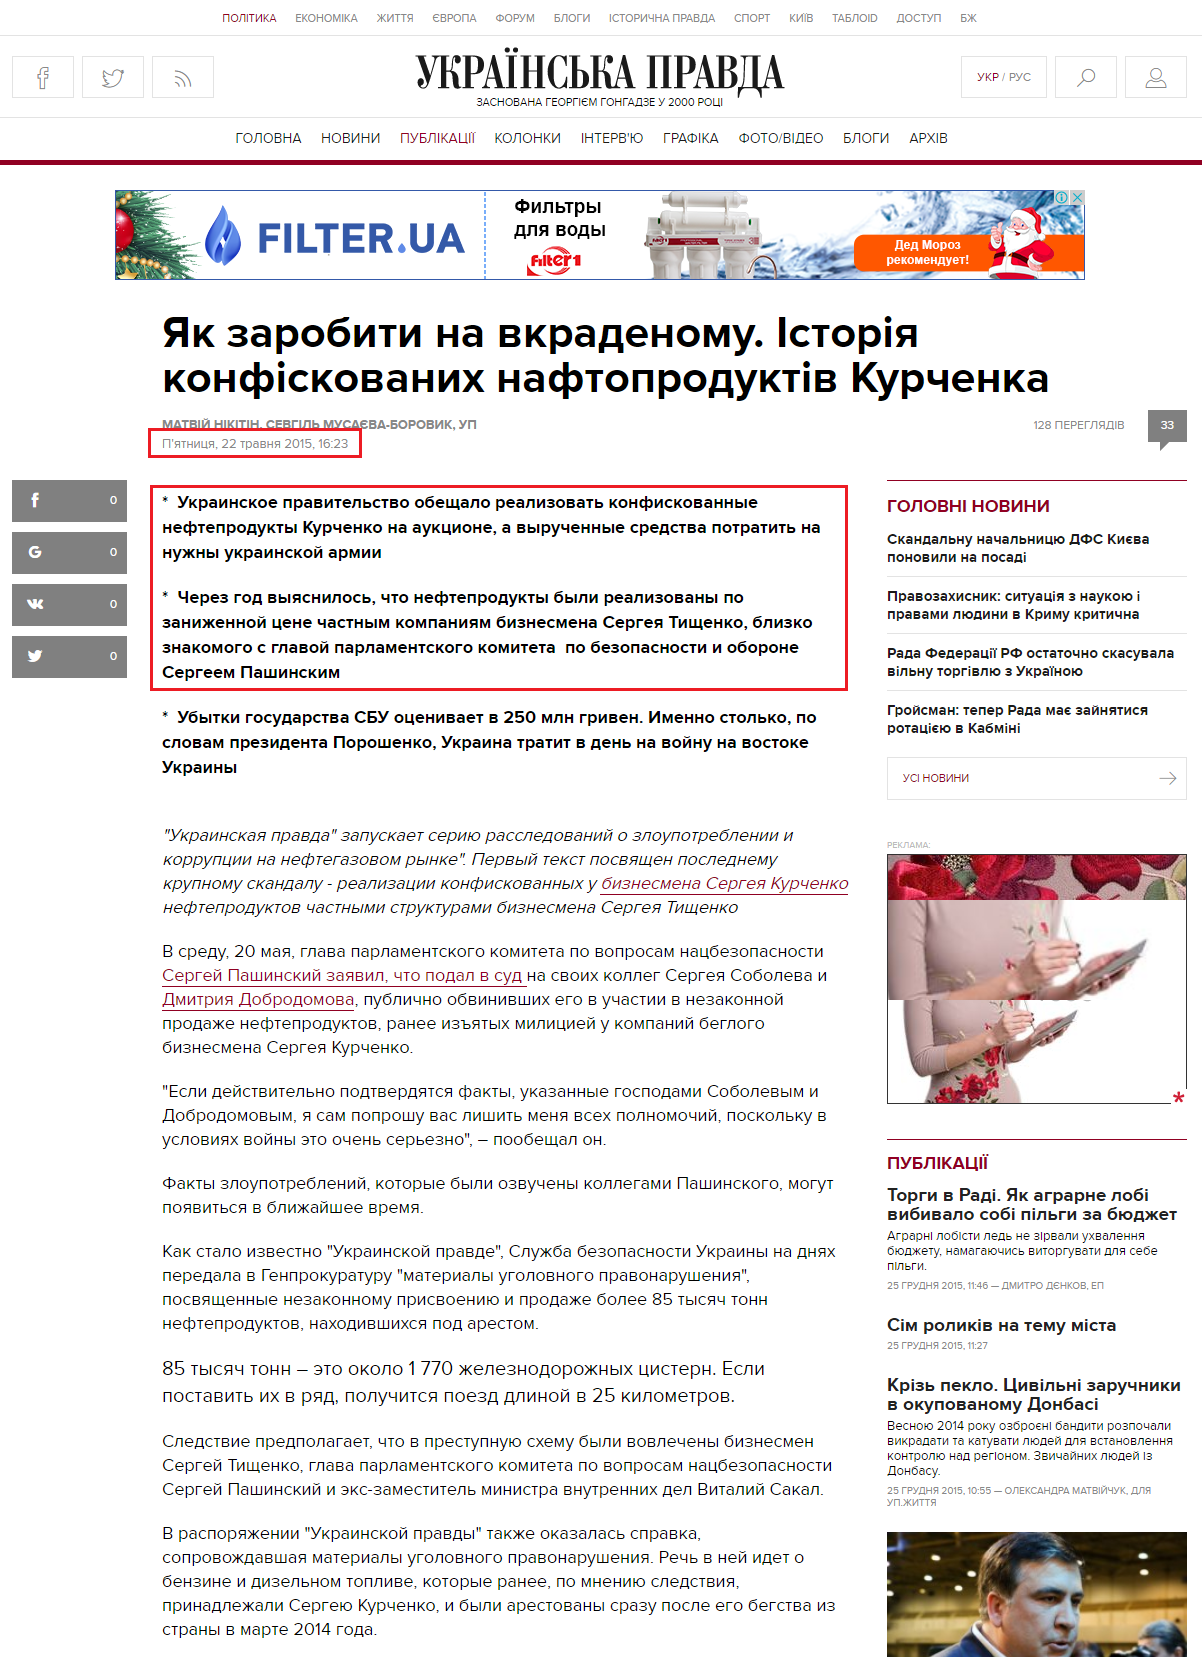 http://www.pravda.com.ua/articles/2015/05/22/7068765/